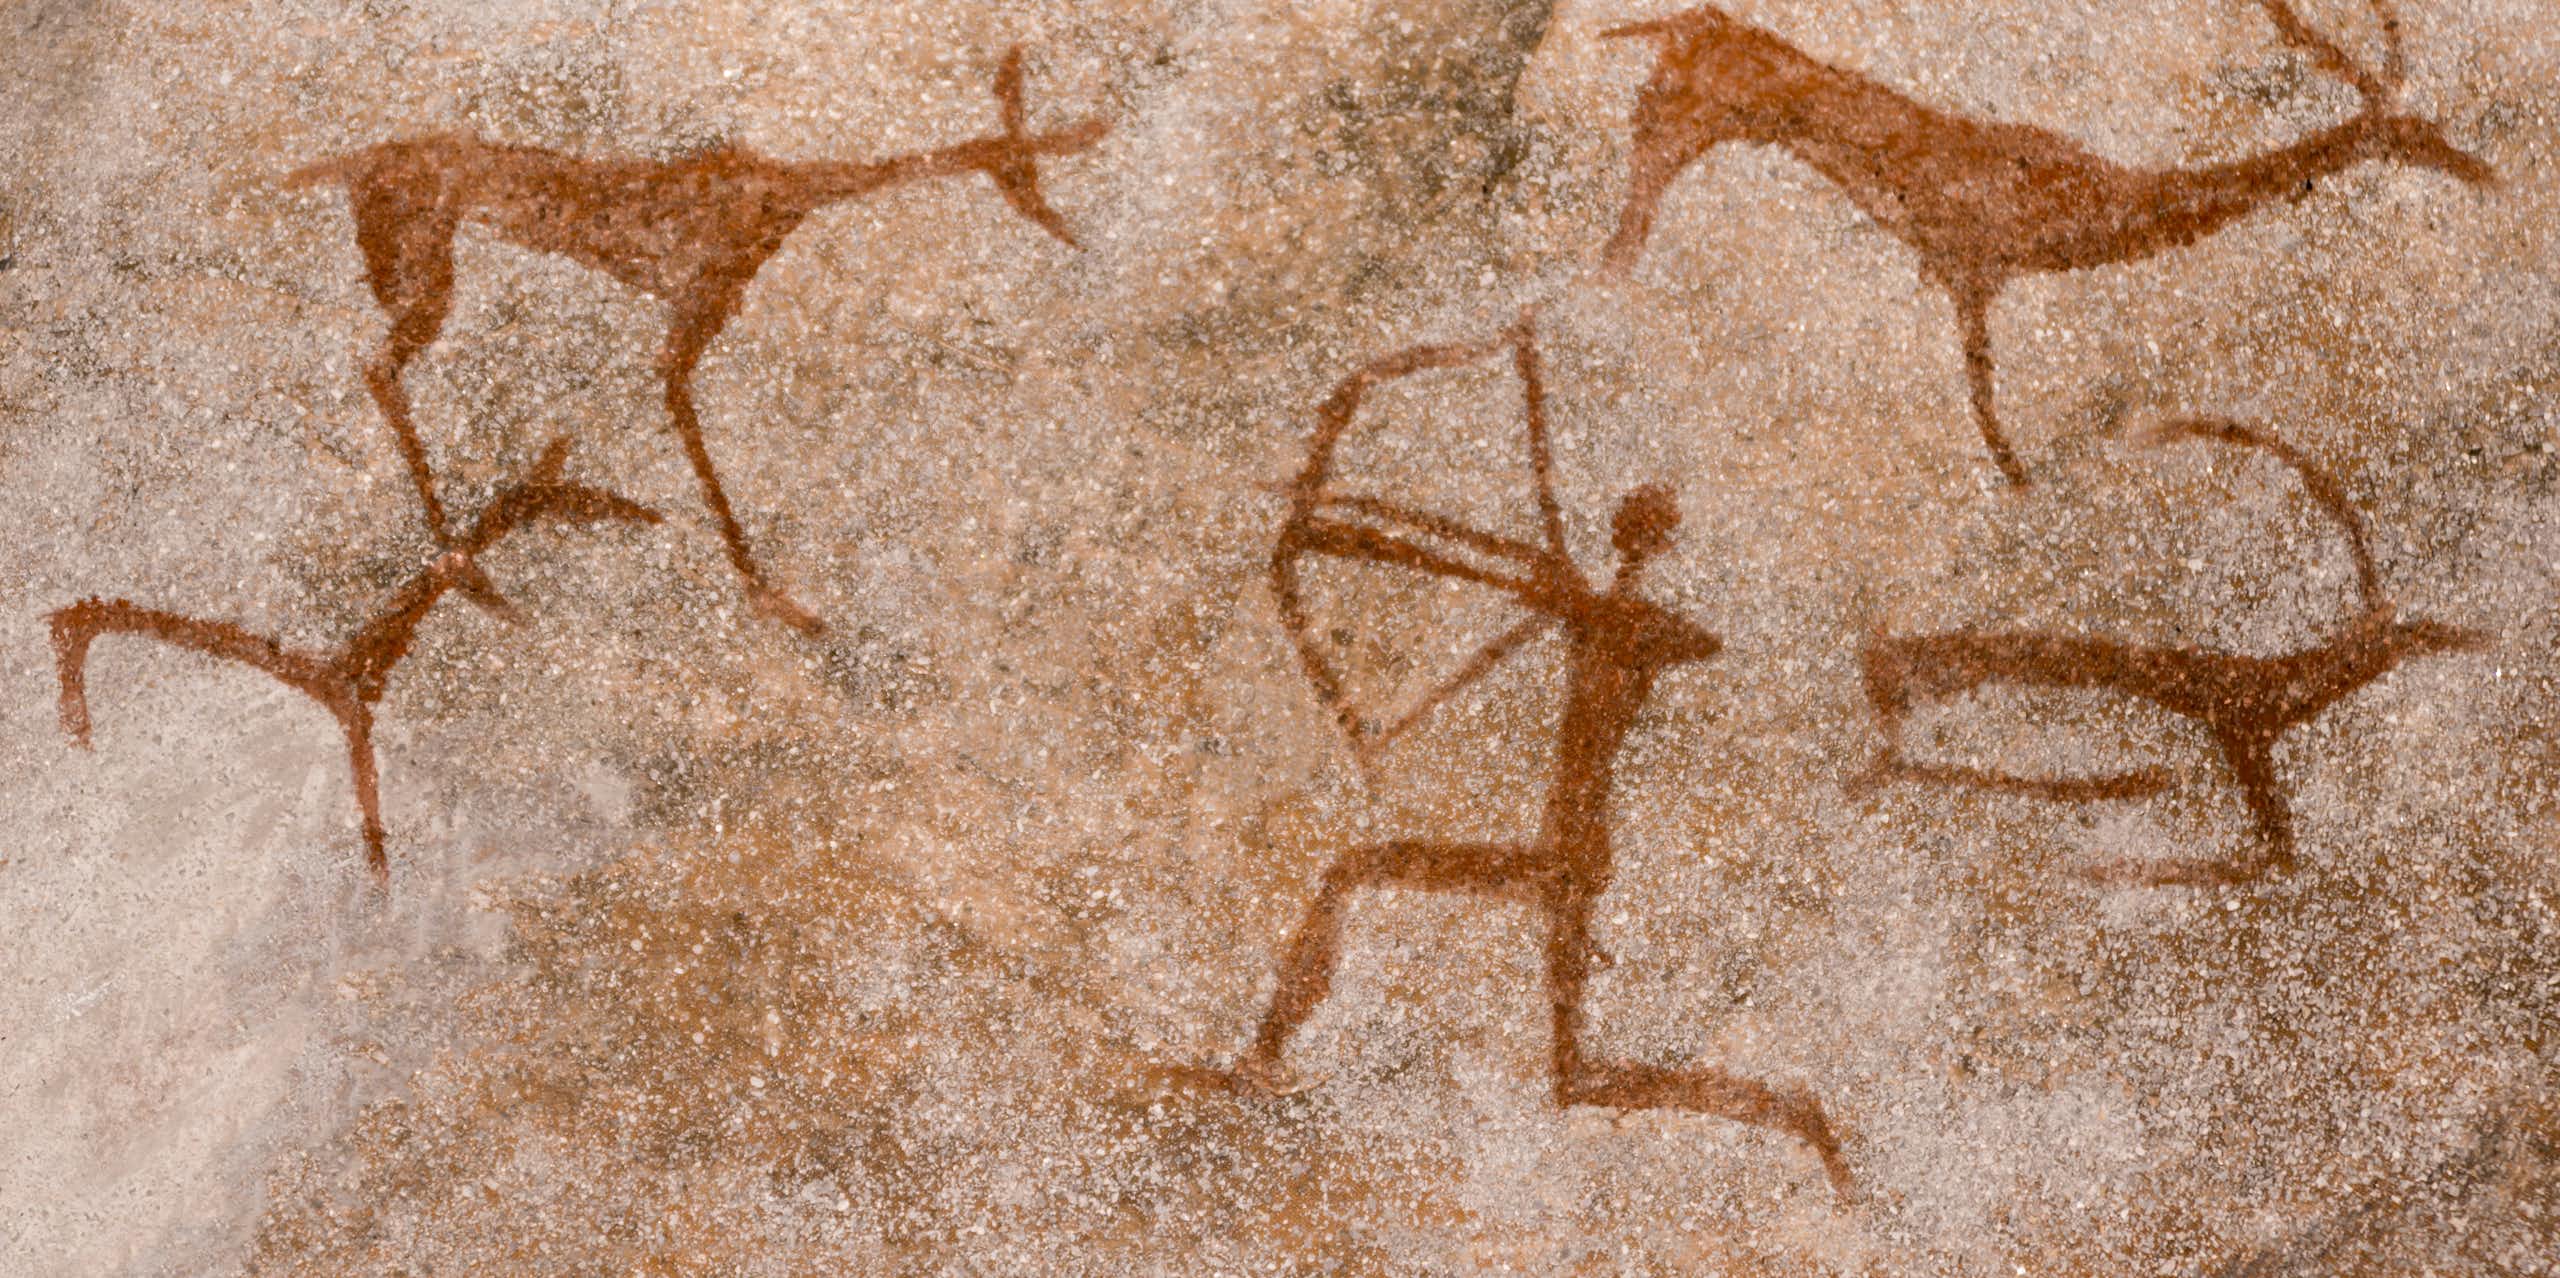 Les femmes de la préhistoire chassaient le gros gibier, ce qui remet en question notre vision du rôle des sexes